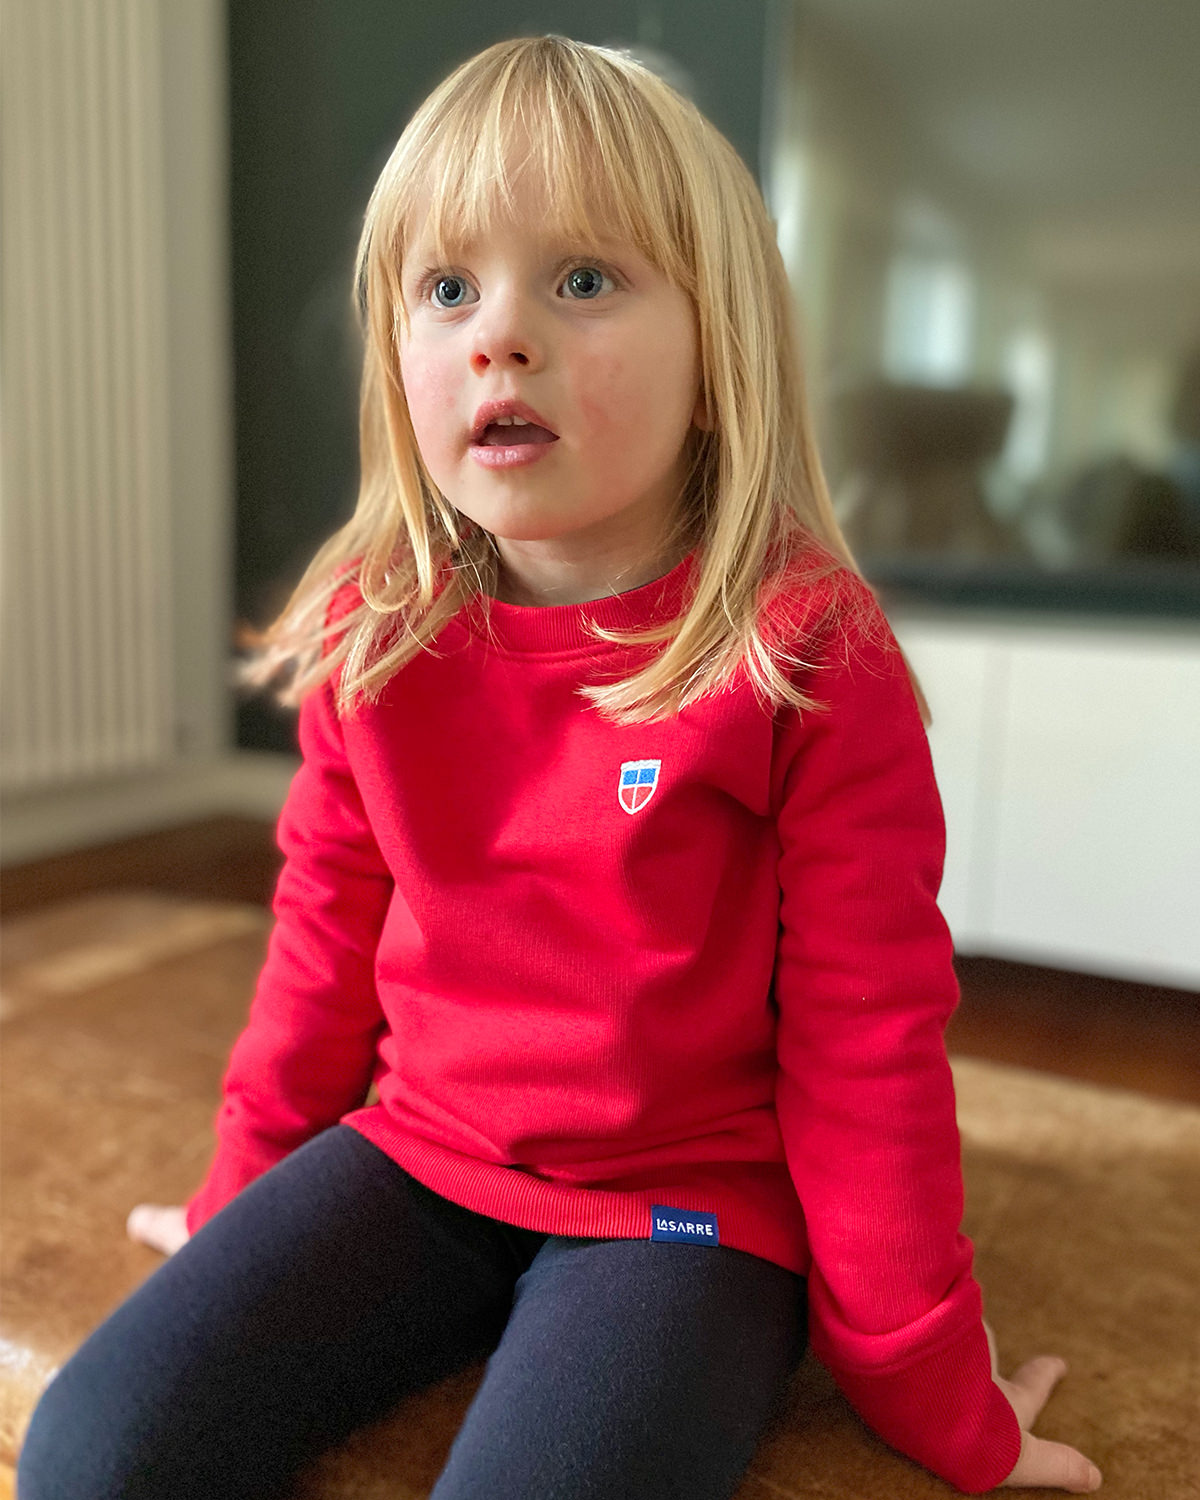 Unser super schöner, knallig-roter Pulli ist perfekt für waschechte Heimat-Fans, egal ob schon groß oder noch klein. Dieses leichte Sweatshirt gibt es von 3 bis 14 Jahren.